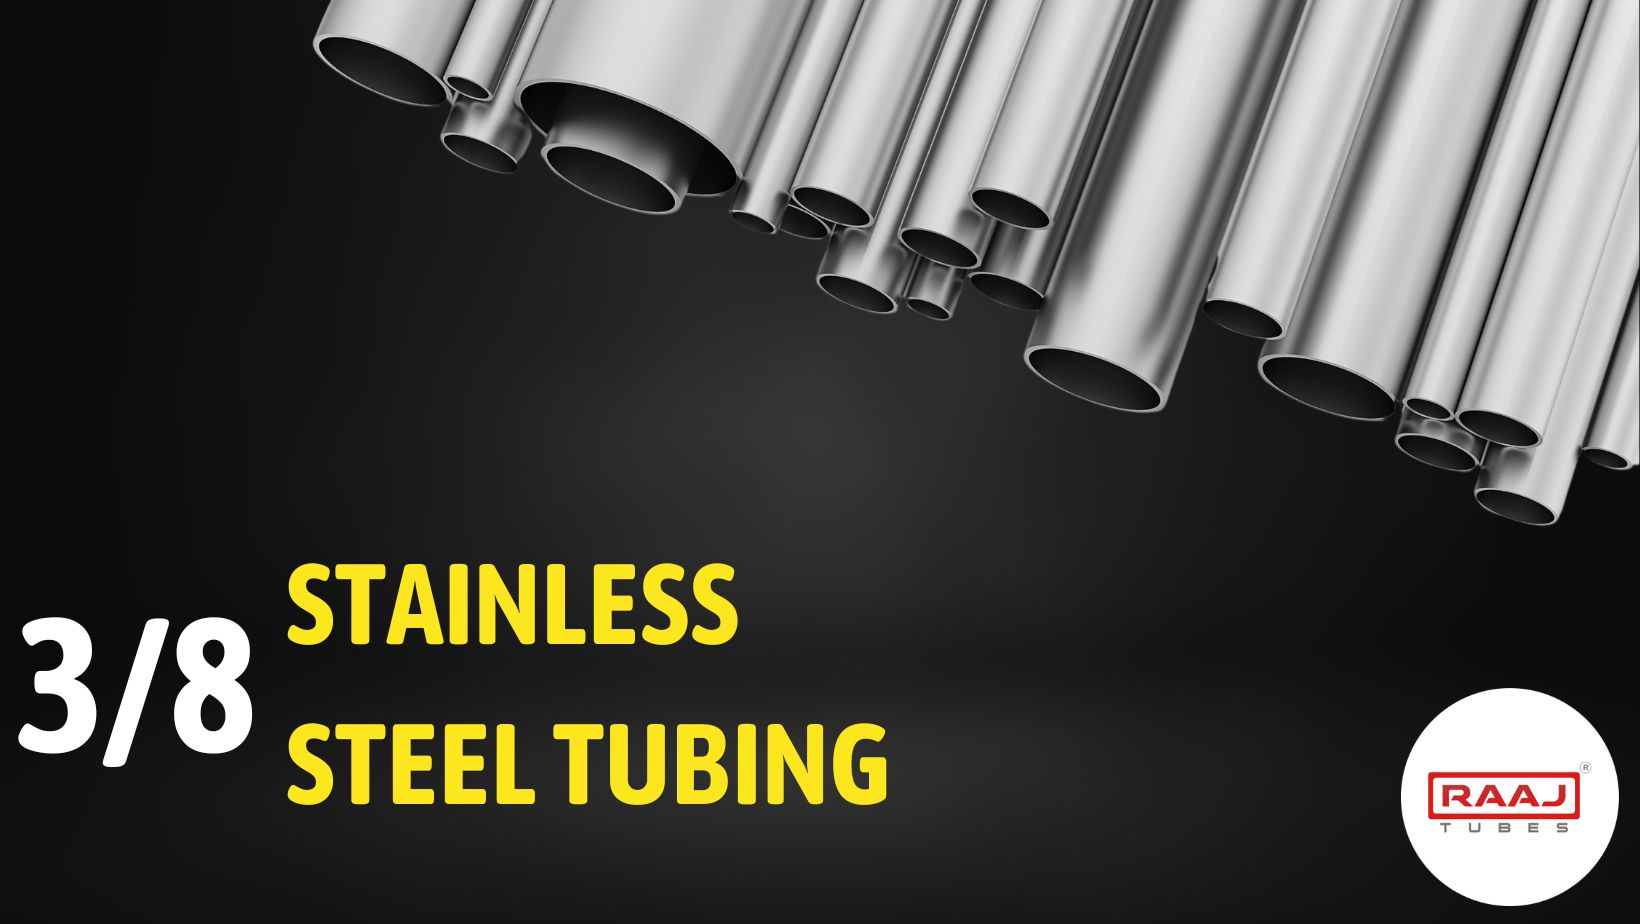 38 Stainless Steel Tubing - Raaj Tubes